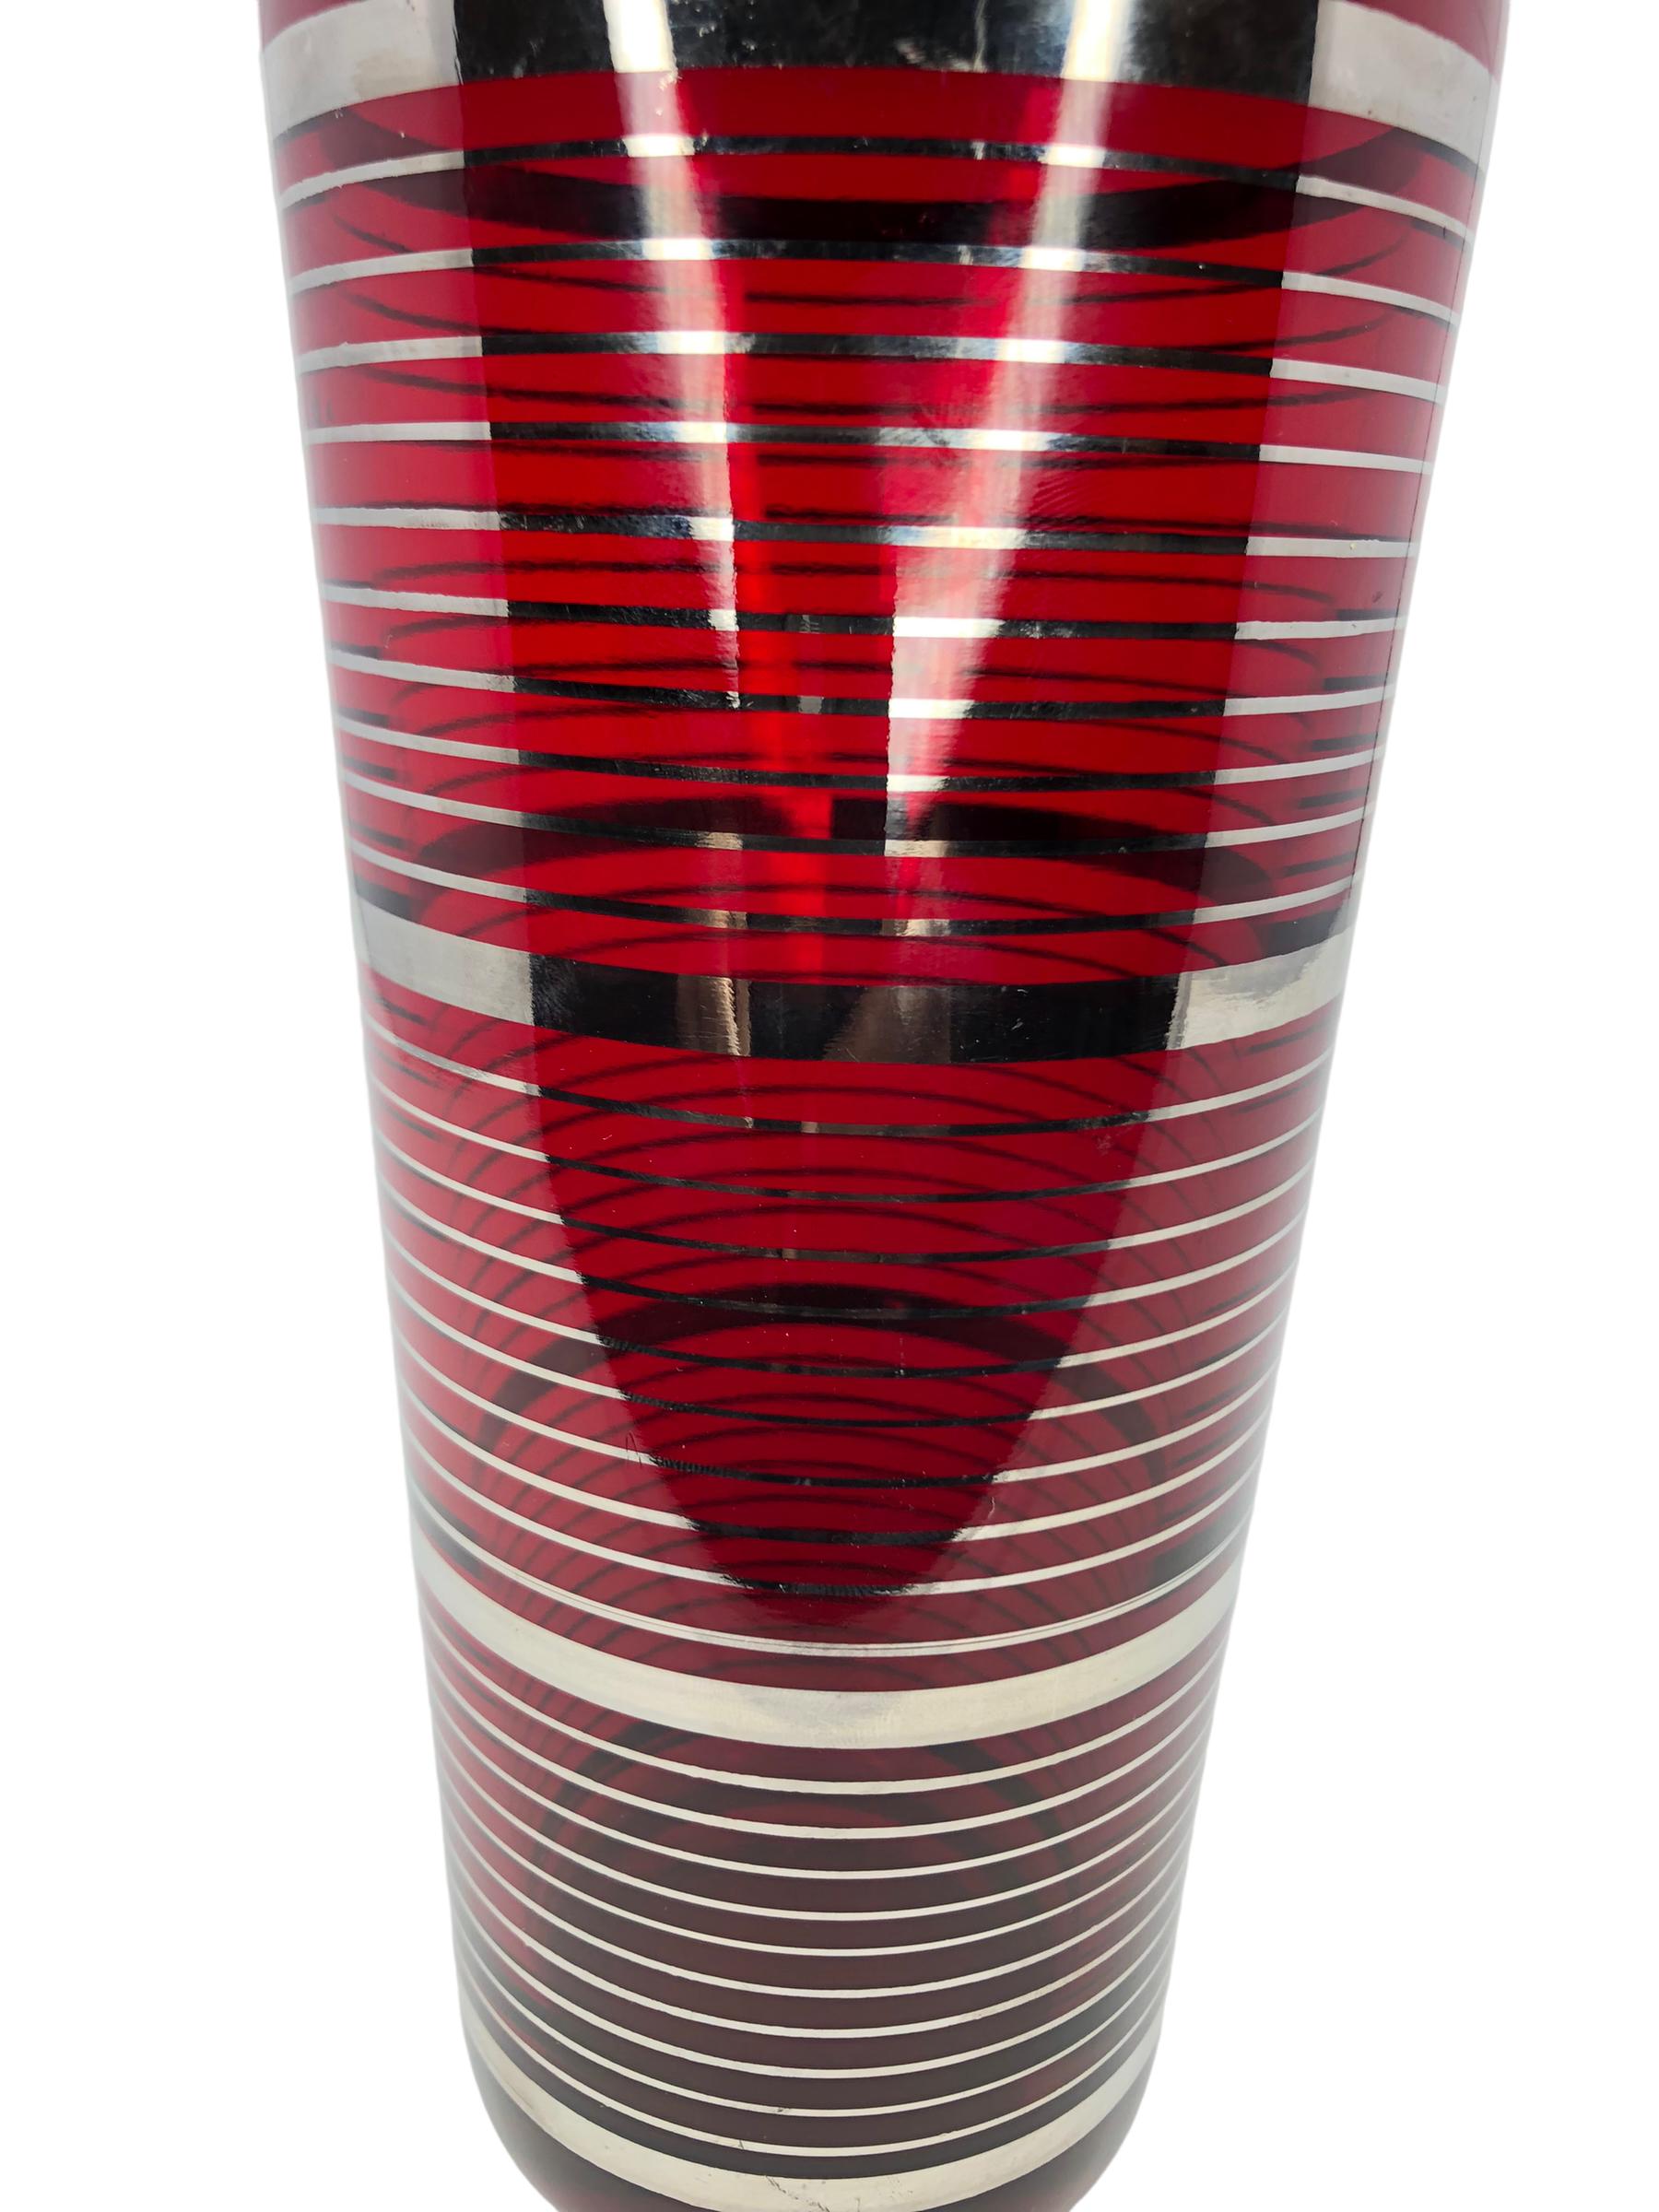 Shakers à cocktail Art déco rouge rubis avec des bandes argentées et un couvercle chromé à versement central. 